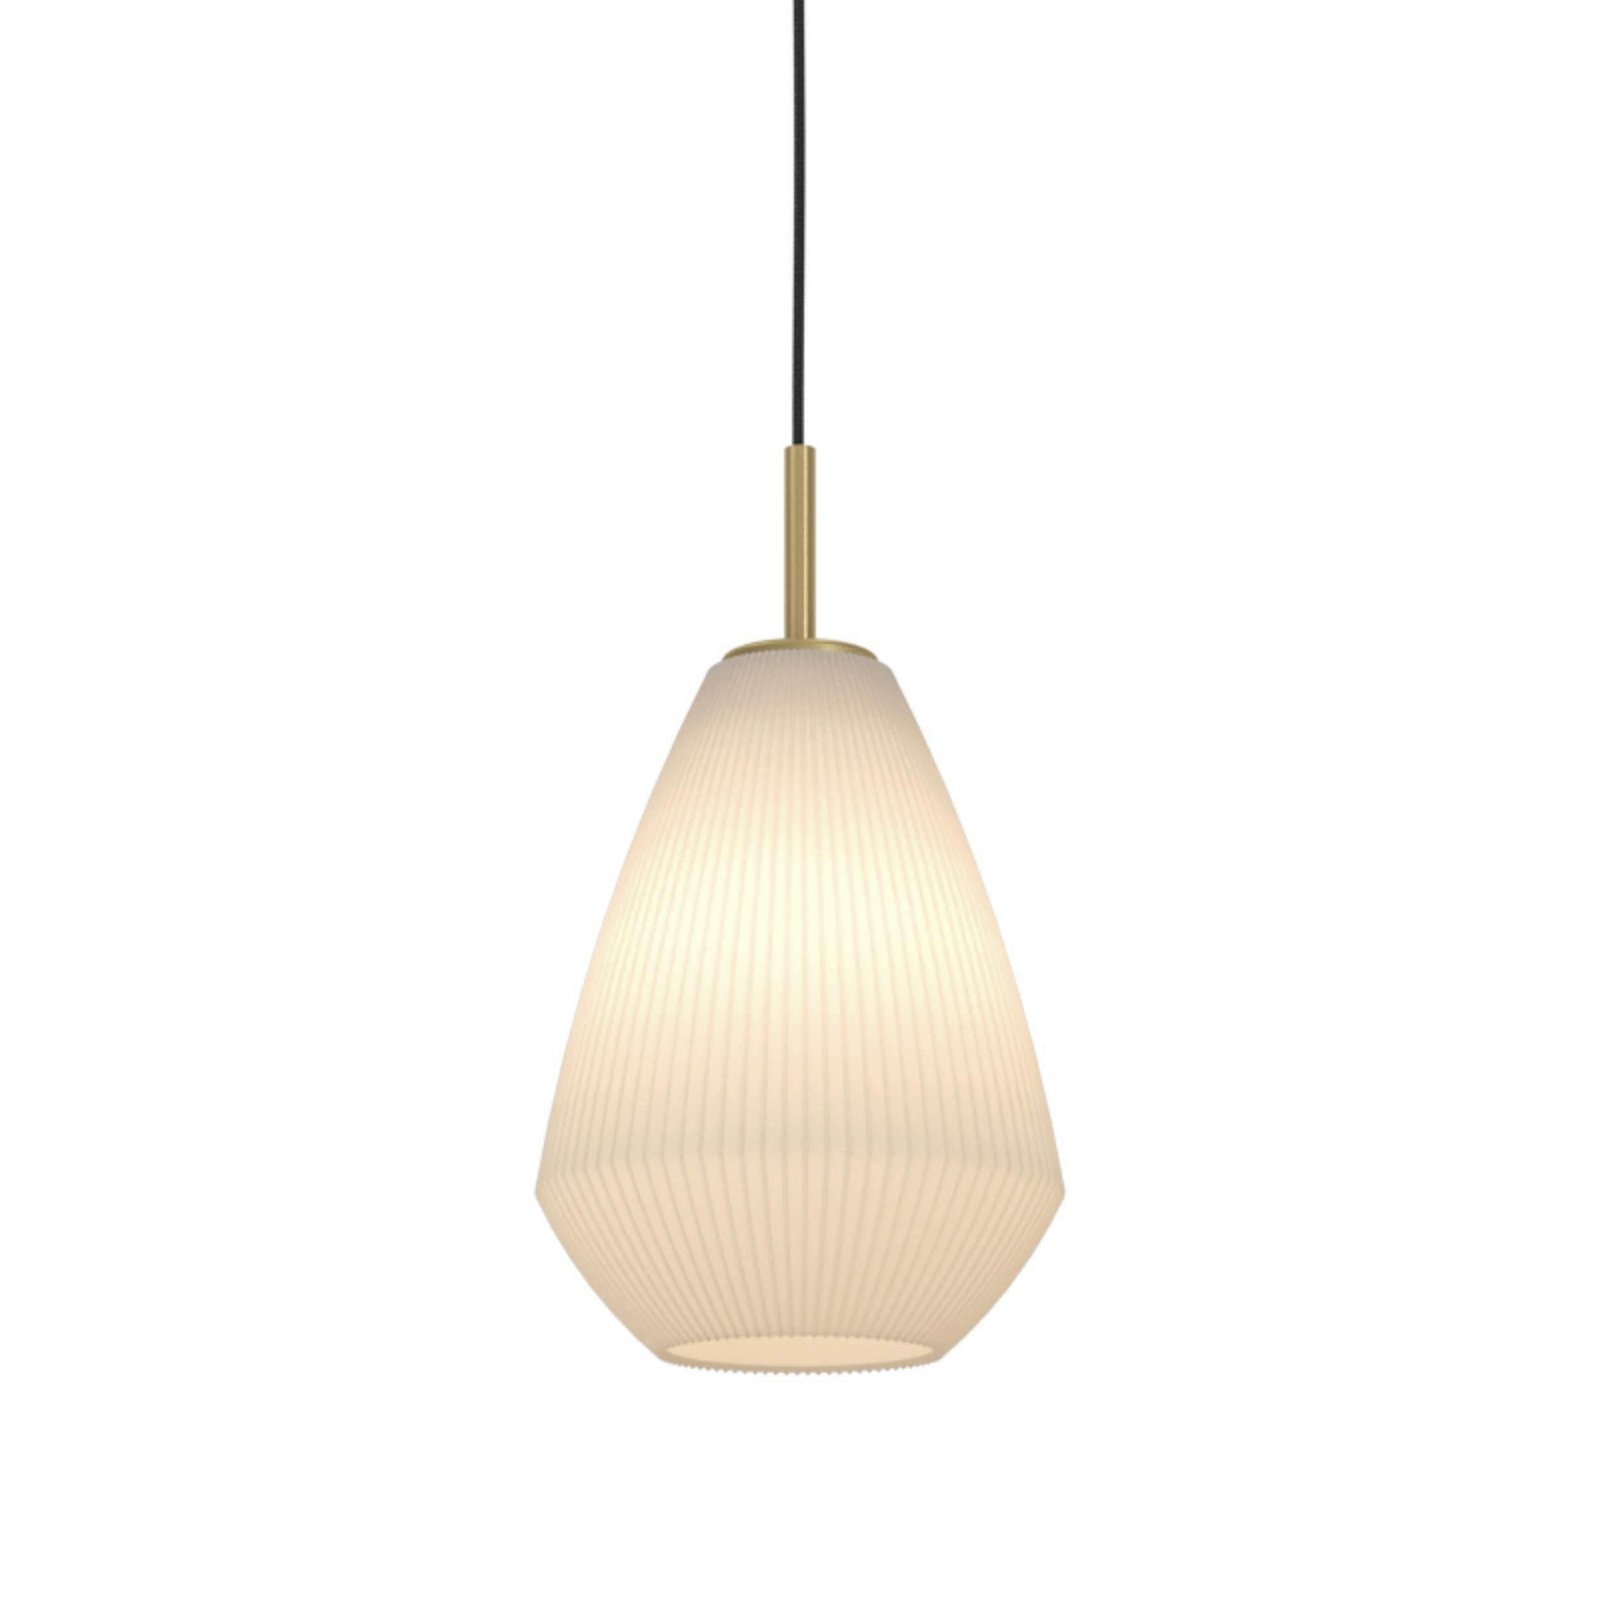 Závěsná lampa Caprarola, Ø 20 cm, písková barva, sklo/kov